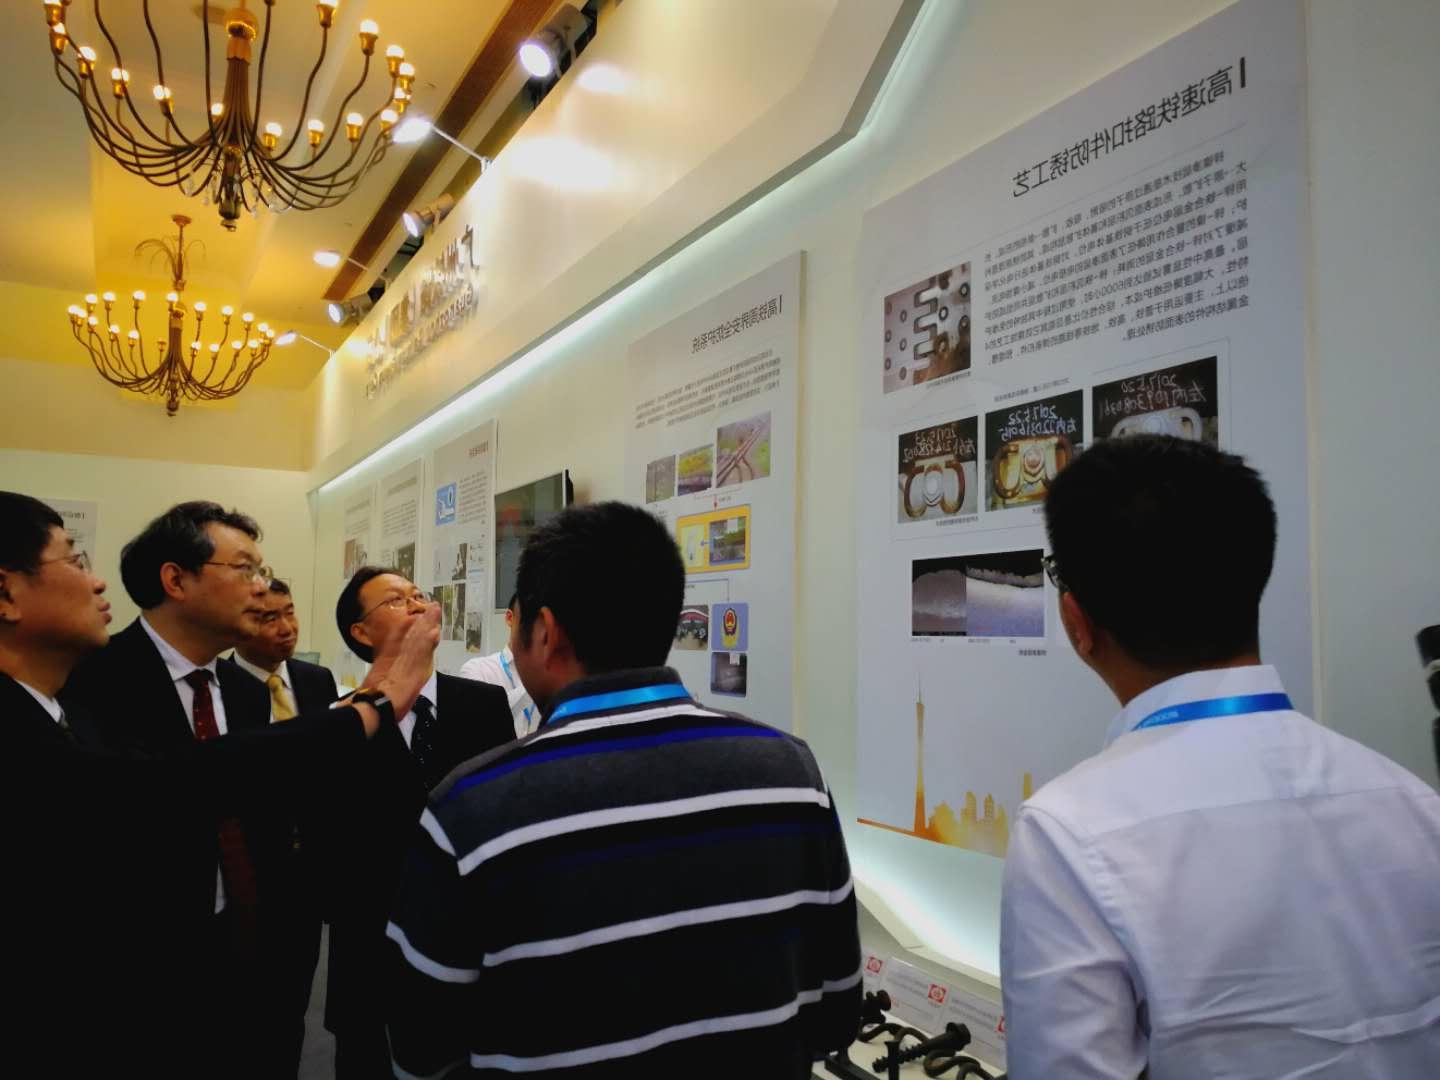 锌镍渗层防腐技术亮相上海第十四届中国国际现代化铁路技术装备展览会